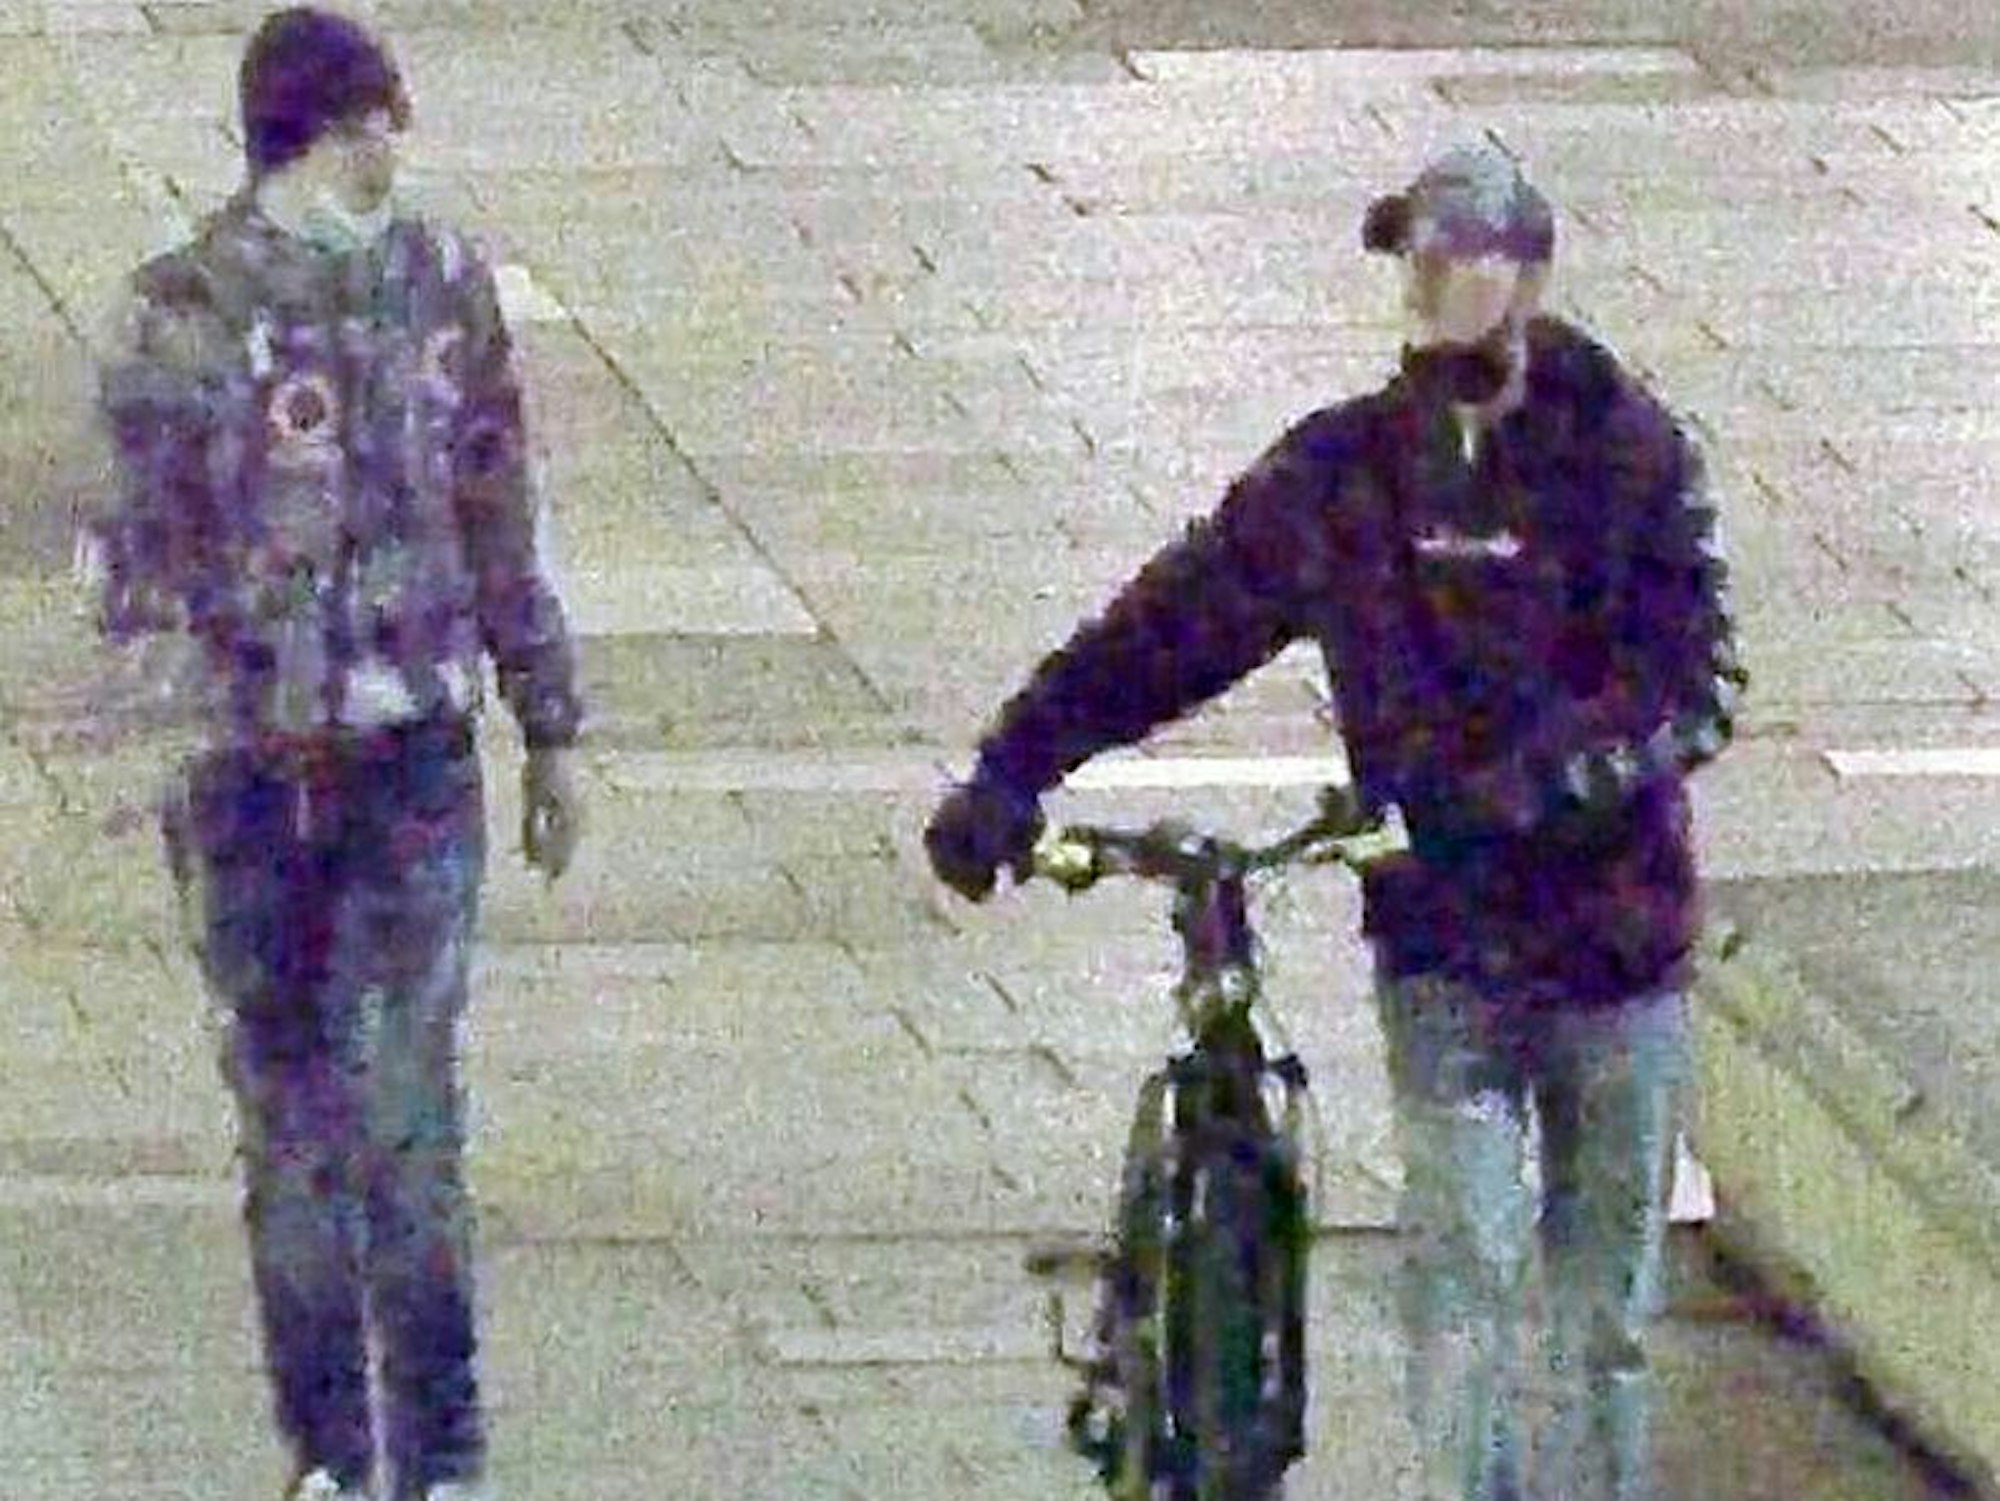 Zwei Männer, einer mit Fahrrad, gehen nebeneinander.